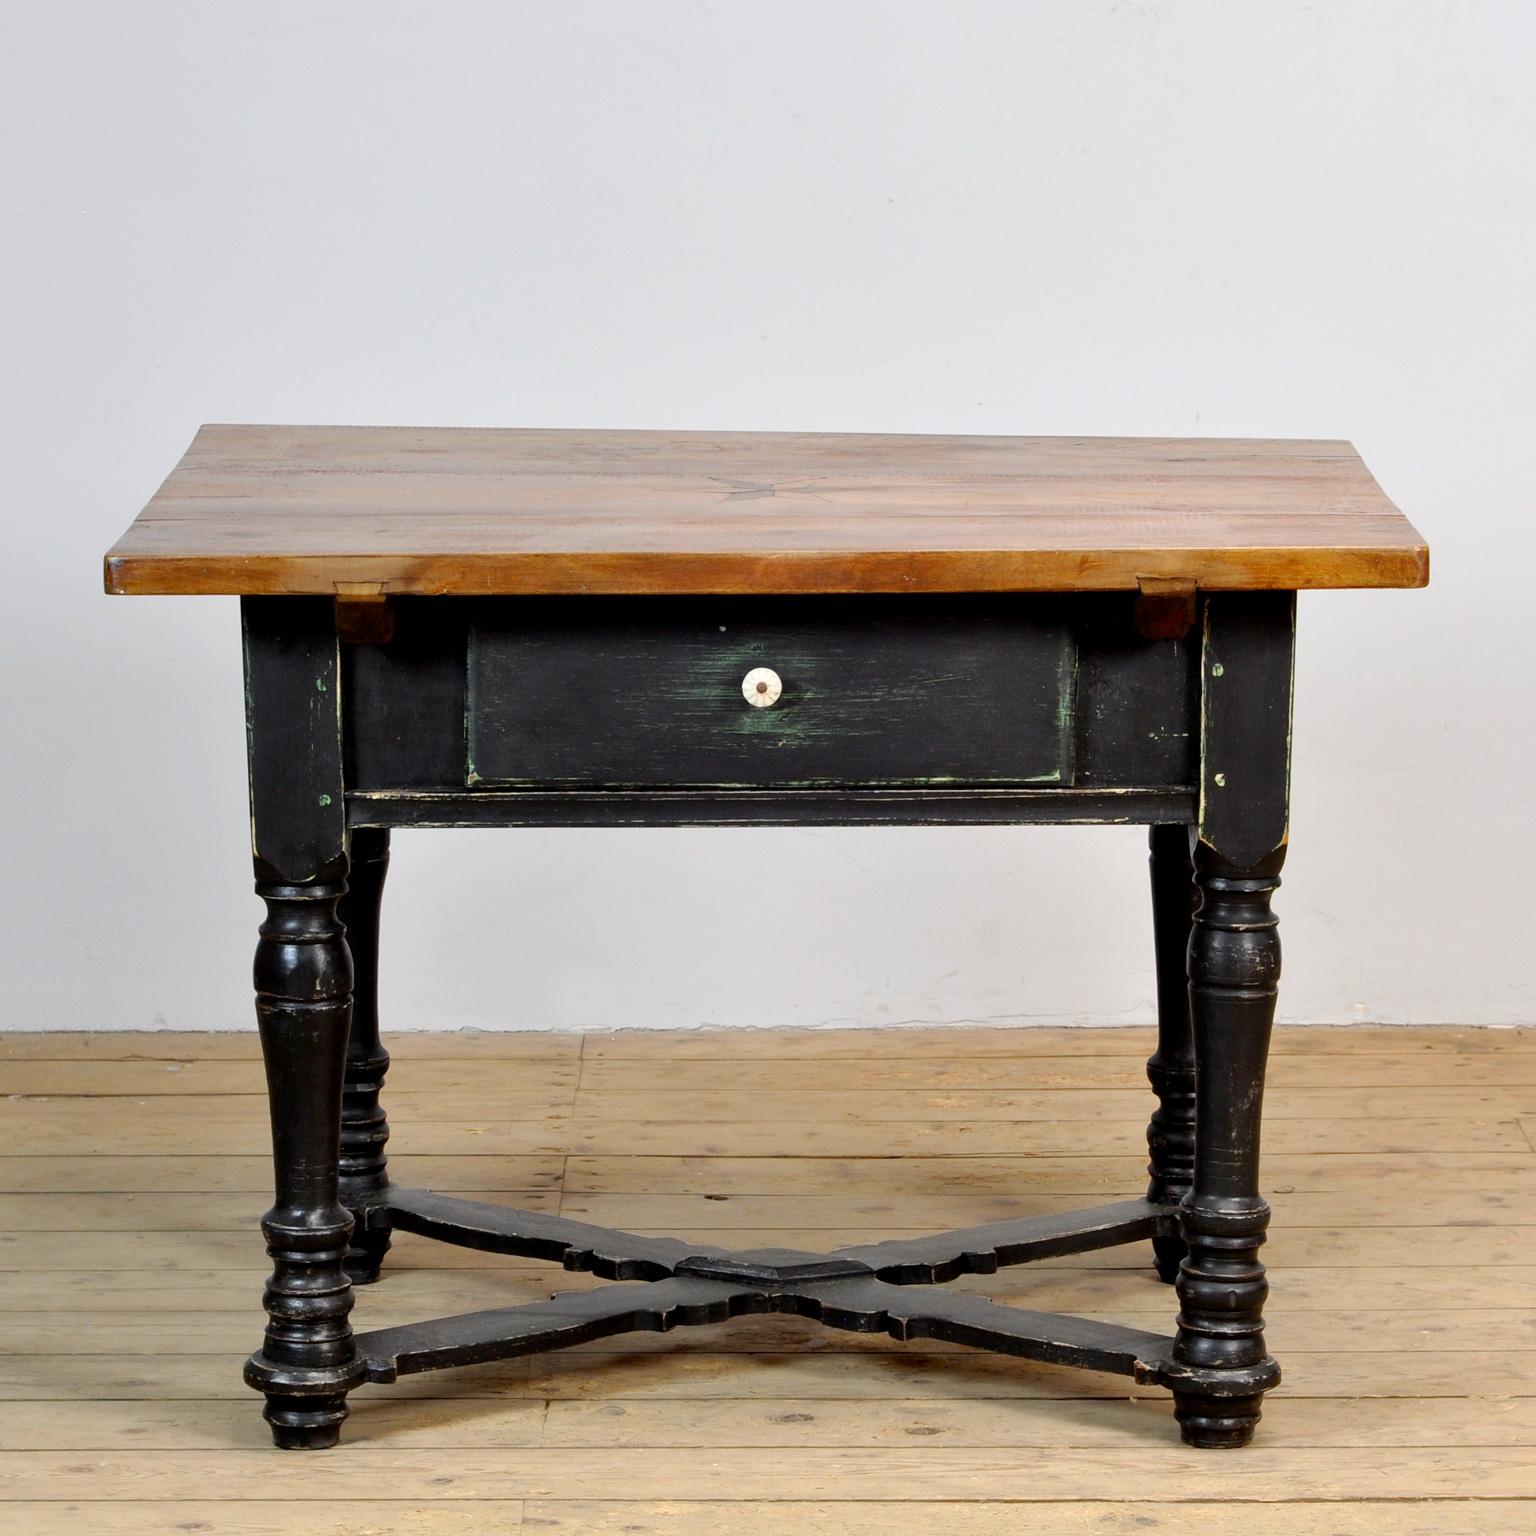 Table des années 1920 avec un tiroir. La table est fabriquée en pin avec un plateau en chêne. Le dessus est incrusté d'une étoile.